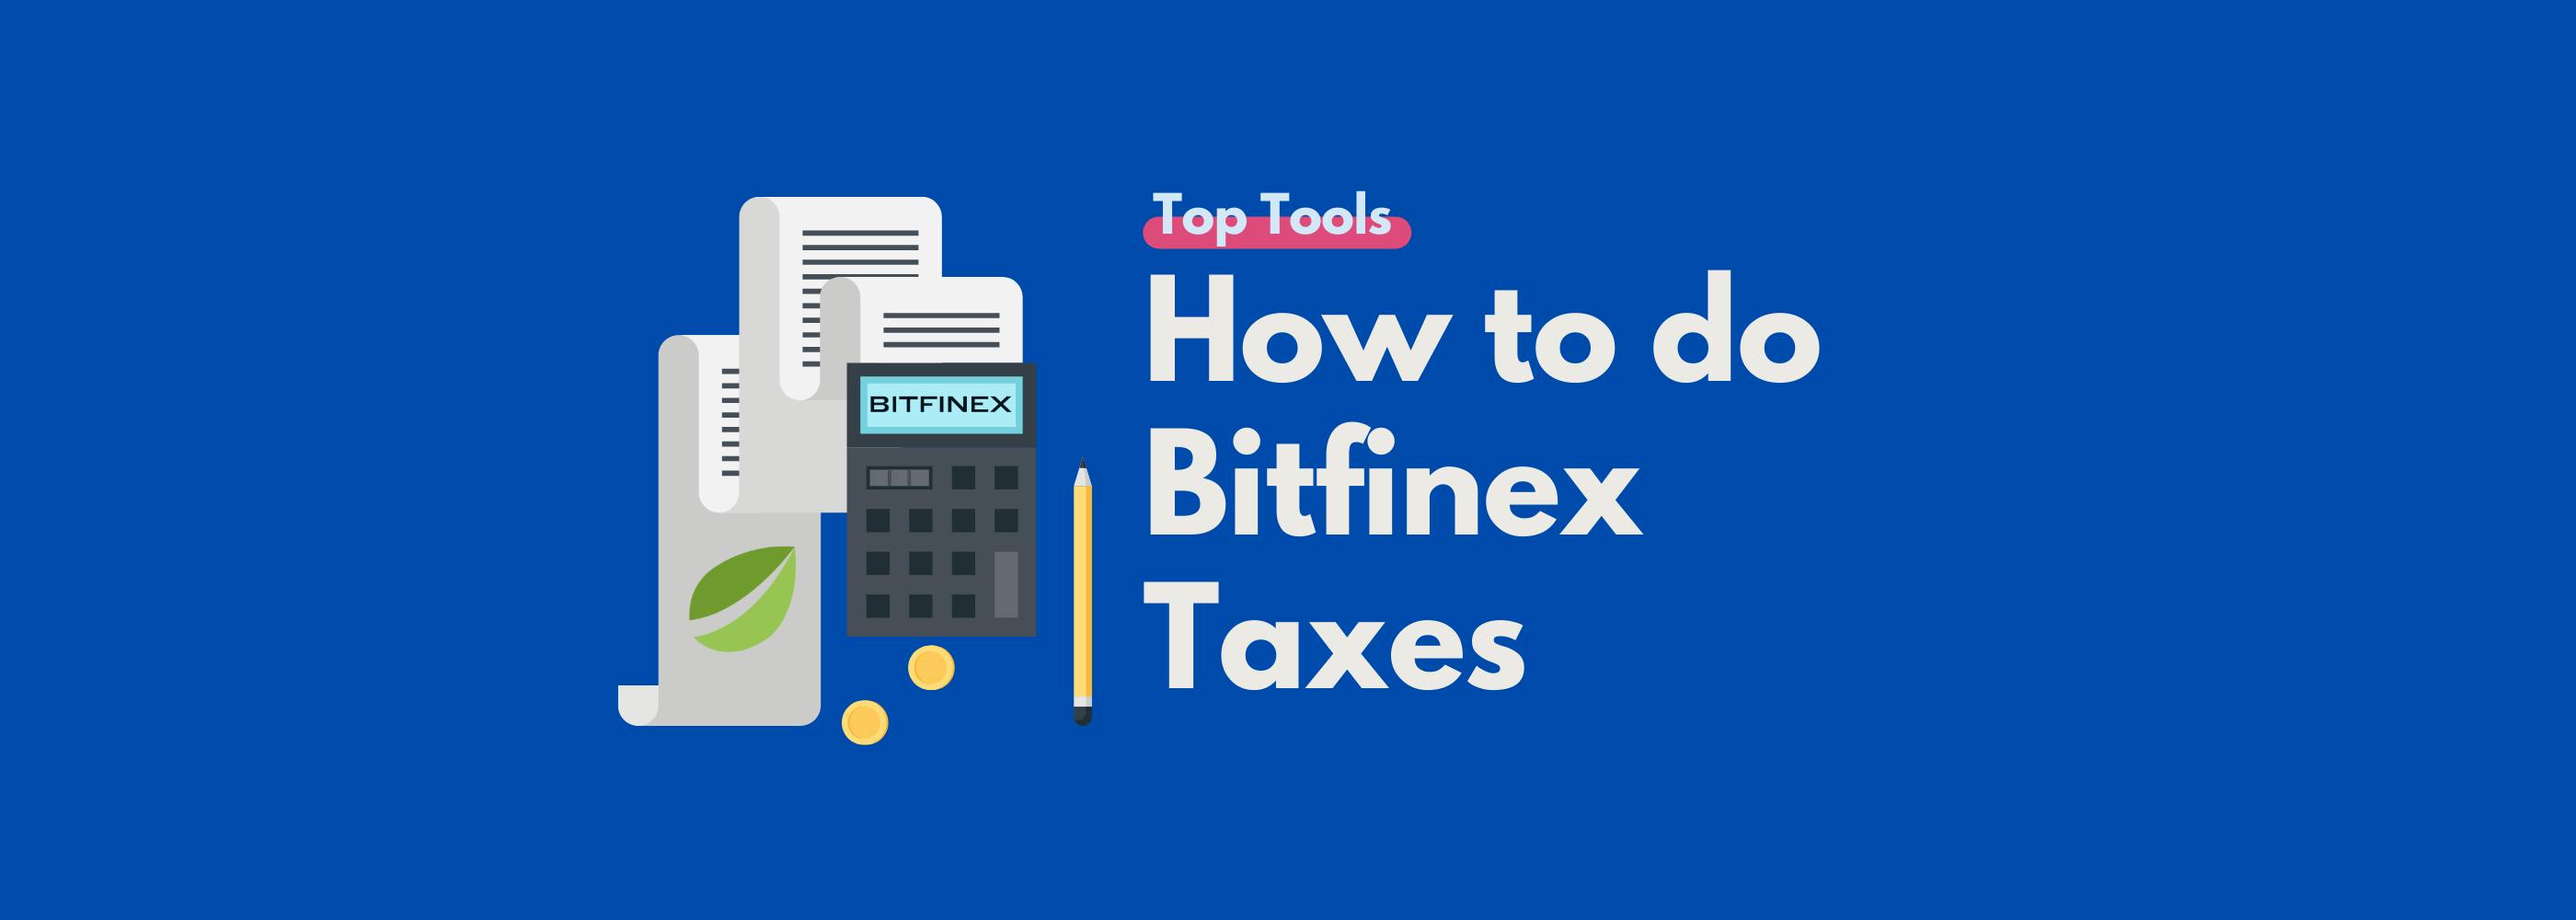 Bitfinex tax guide